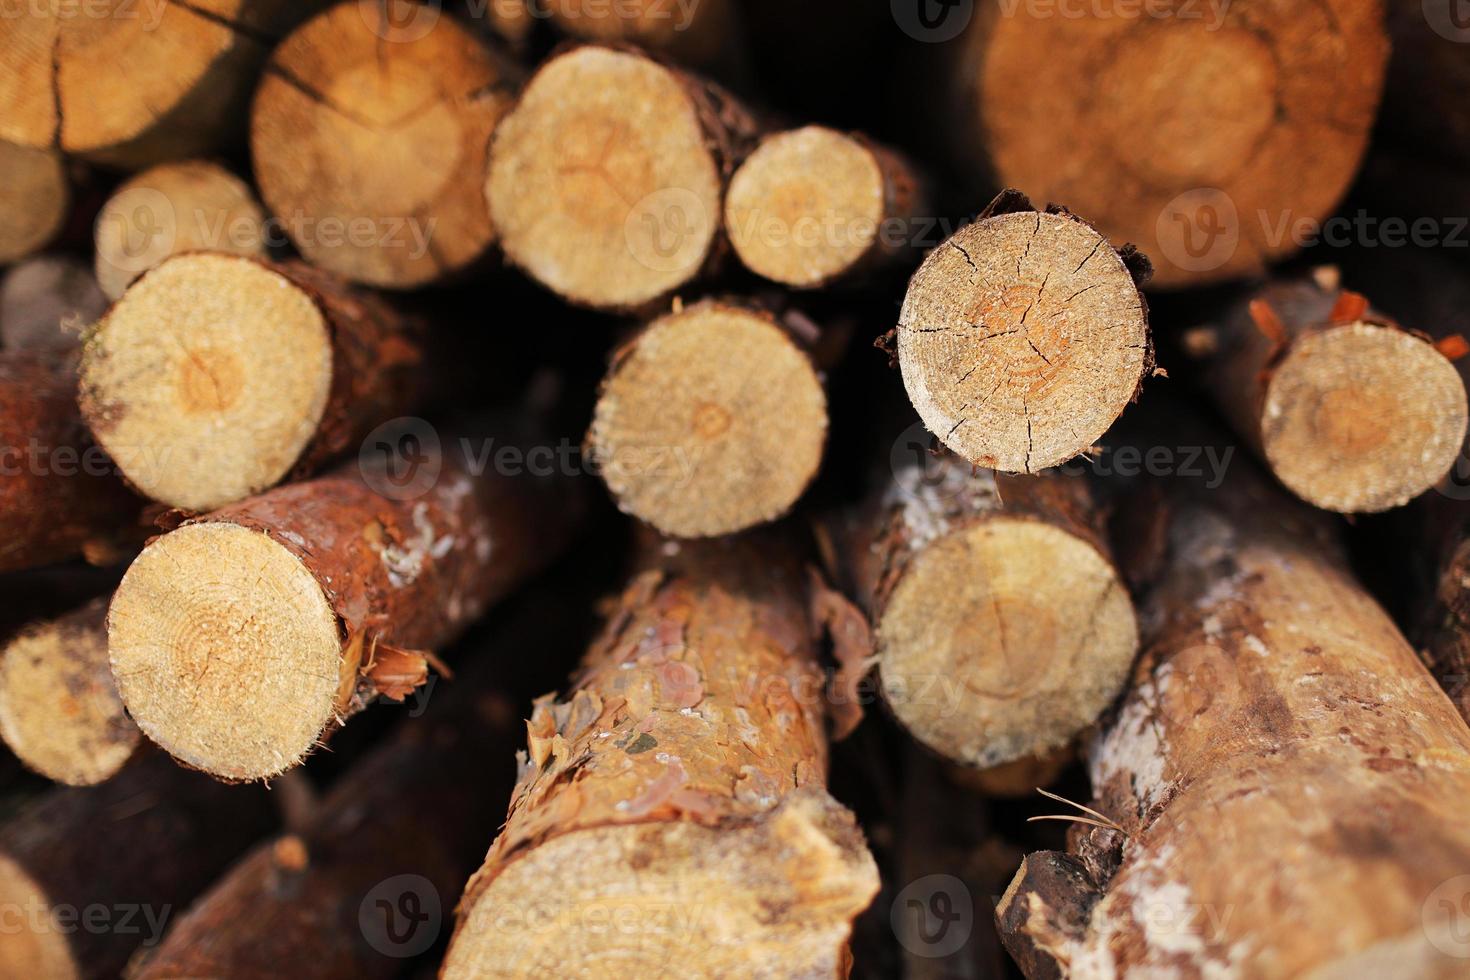 pila de troncos de pino cortados en un bosque. troncos de madera, tala de madera, destrucción industrial, los bosques están desapareciendo, tala ilegal. enfoque selectivo. foto